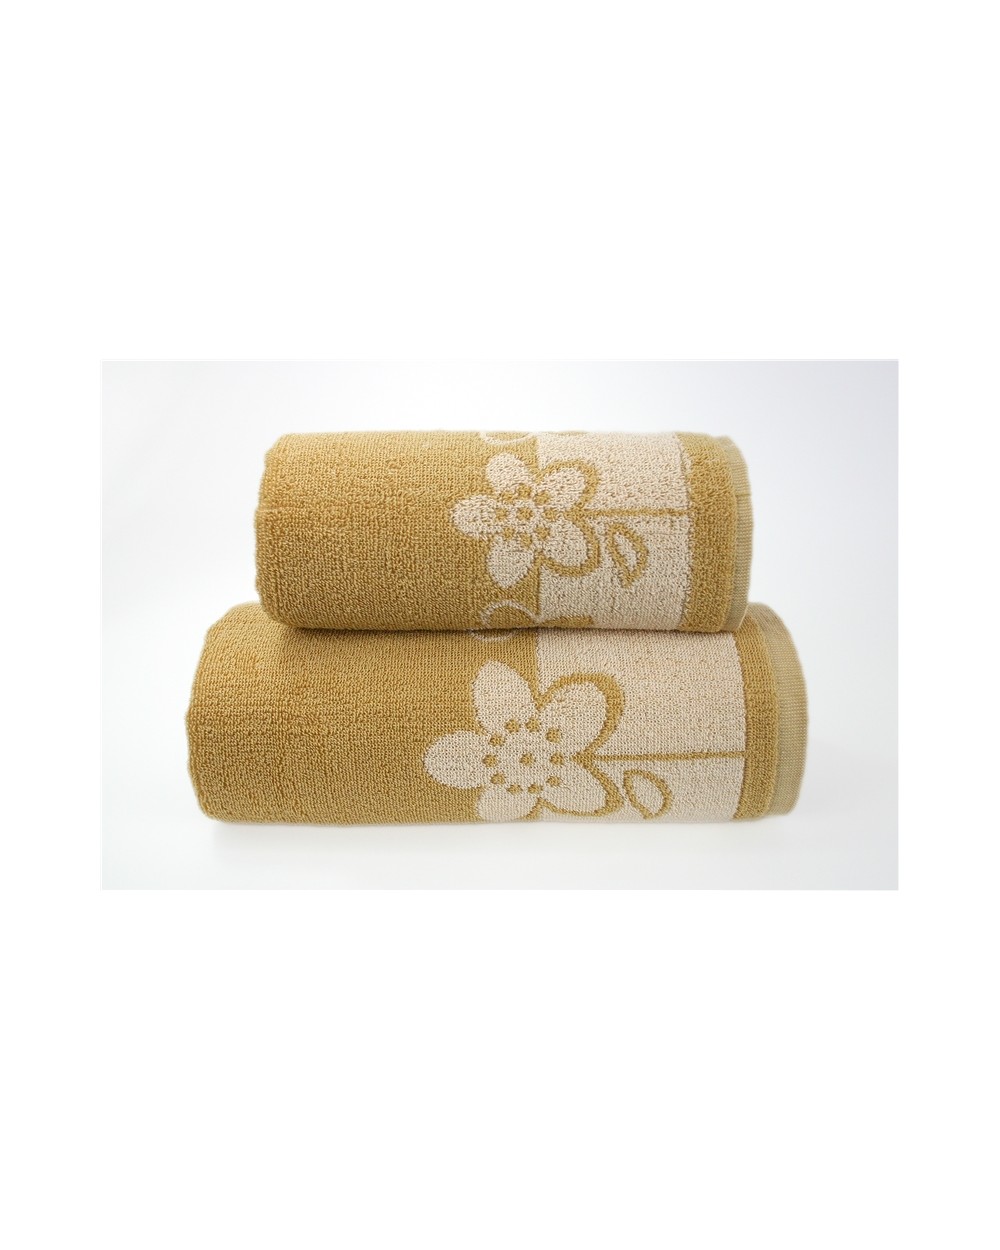 Ręcznik Paloma 2 bawełna 50x100 morelowy